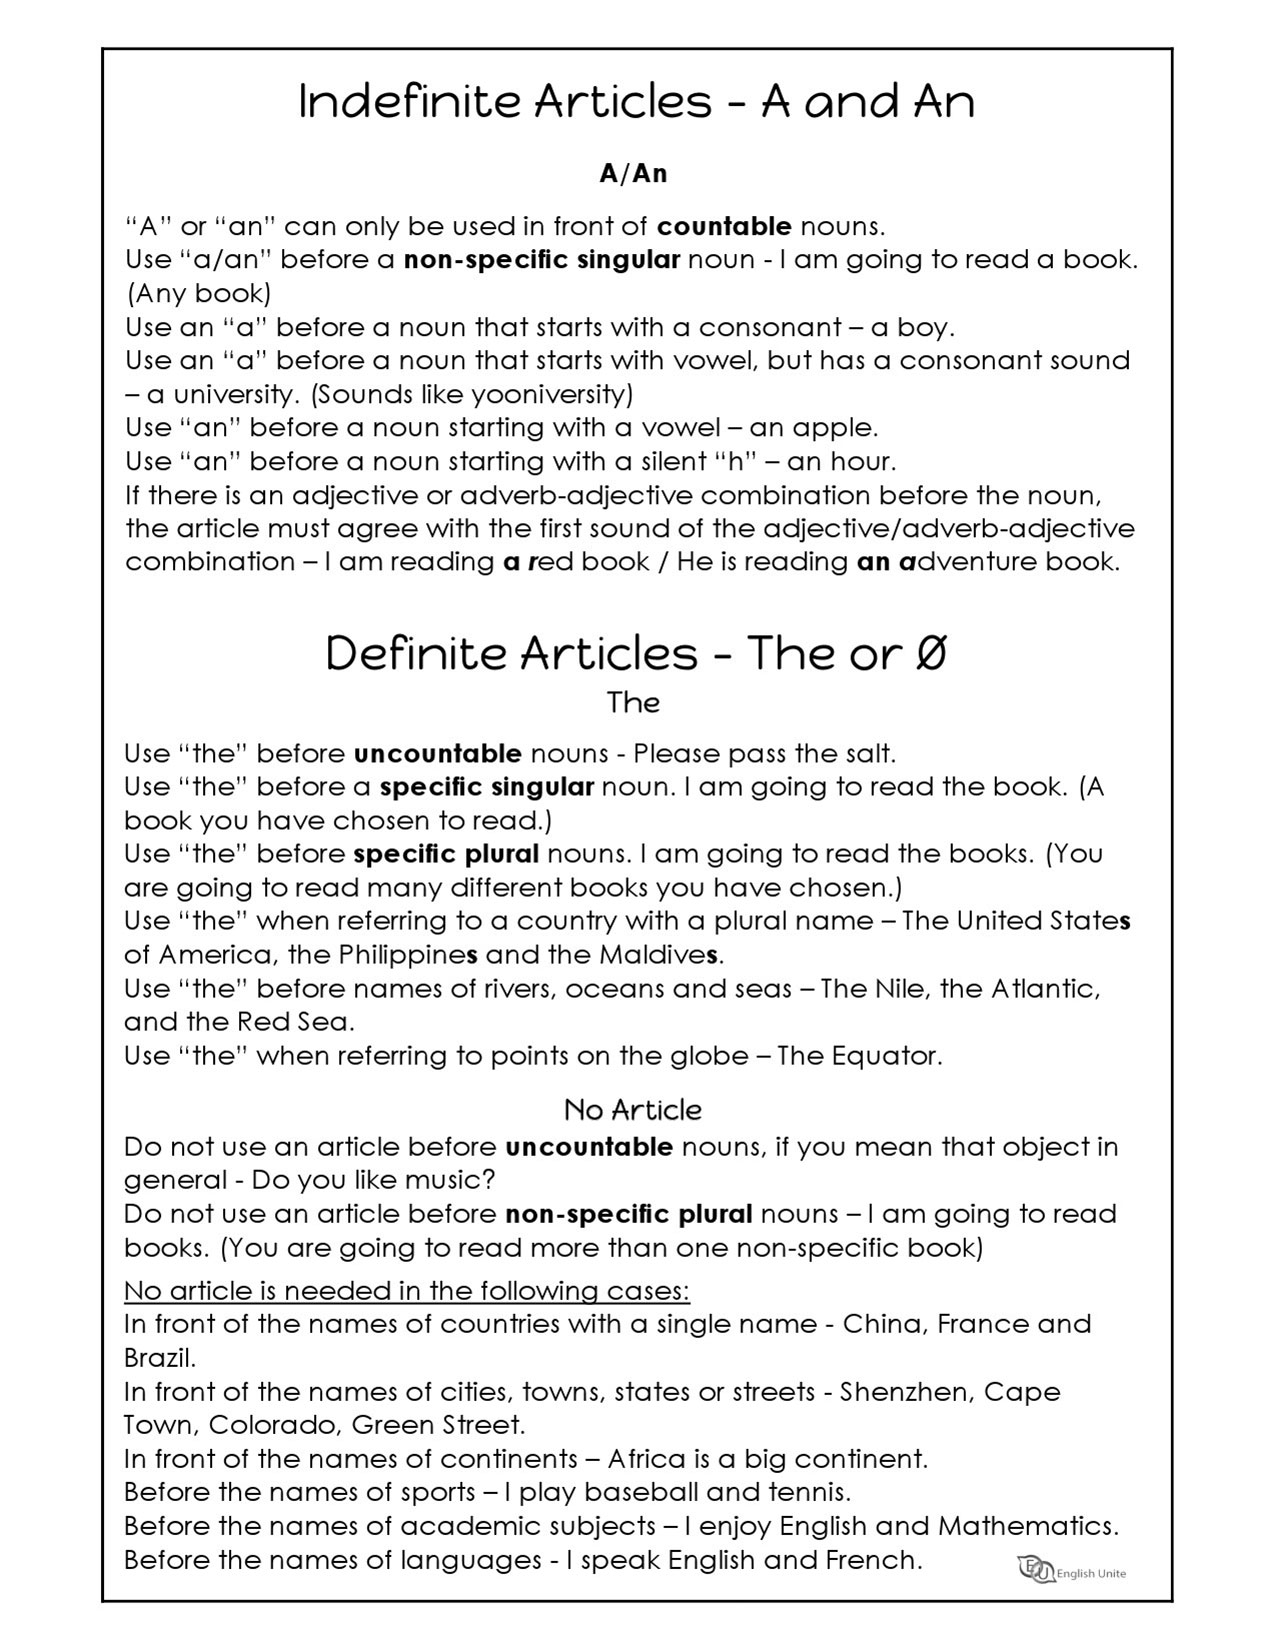 english-unite-grammar-worksheets-articles